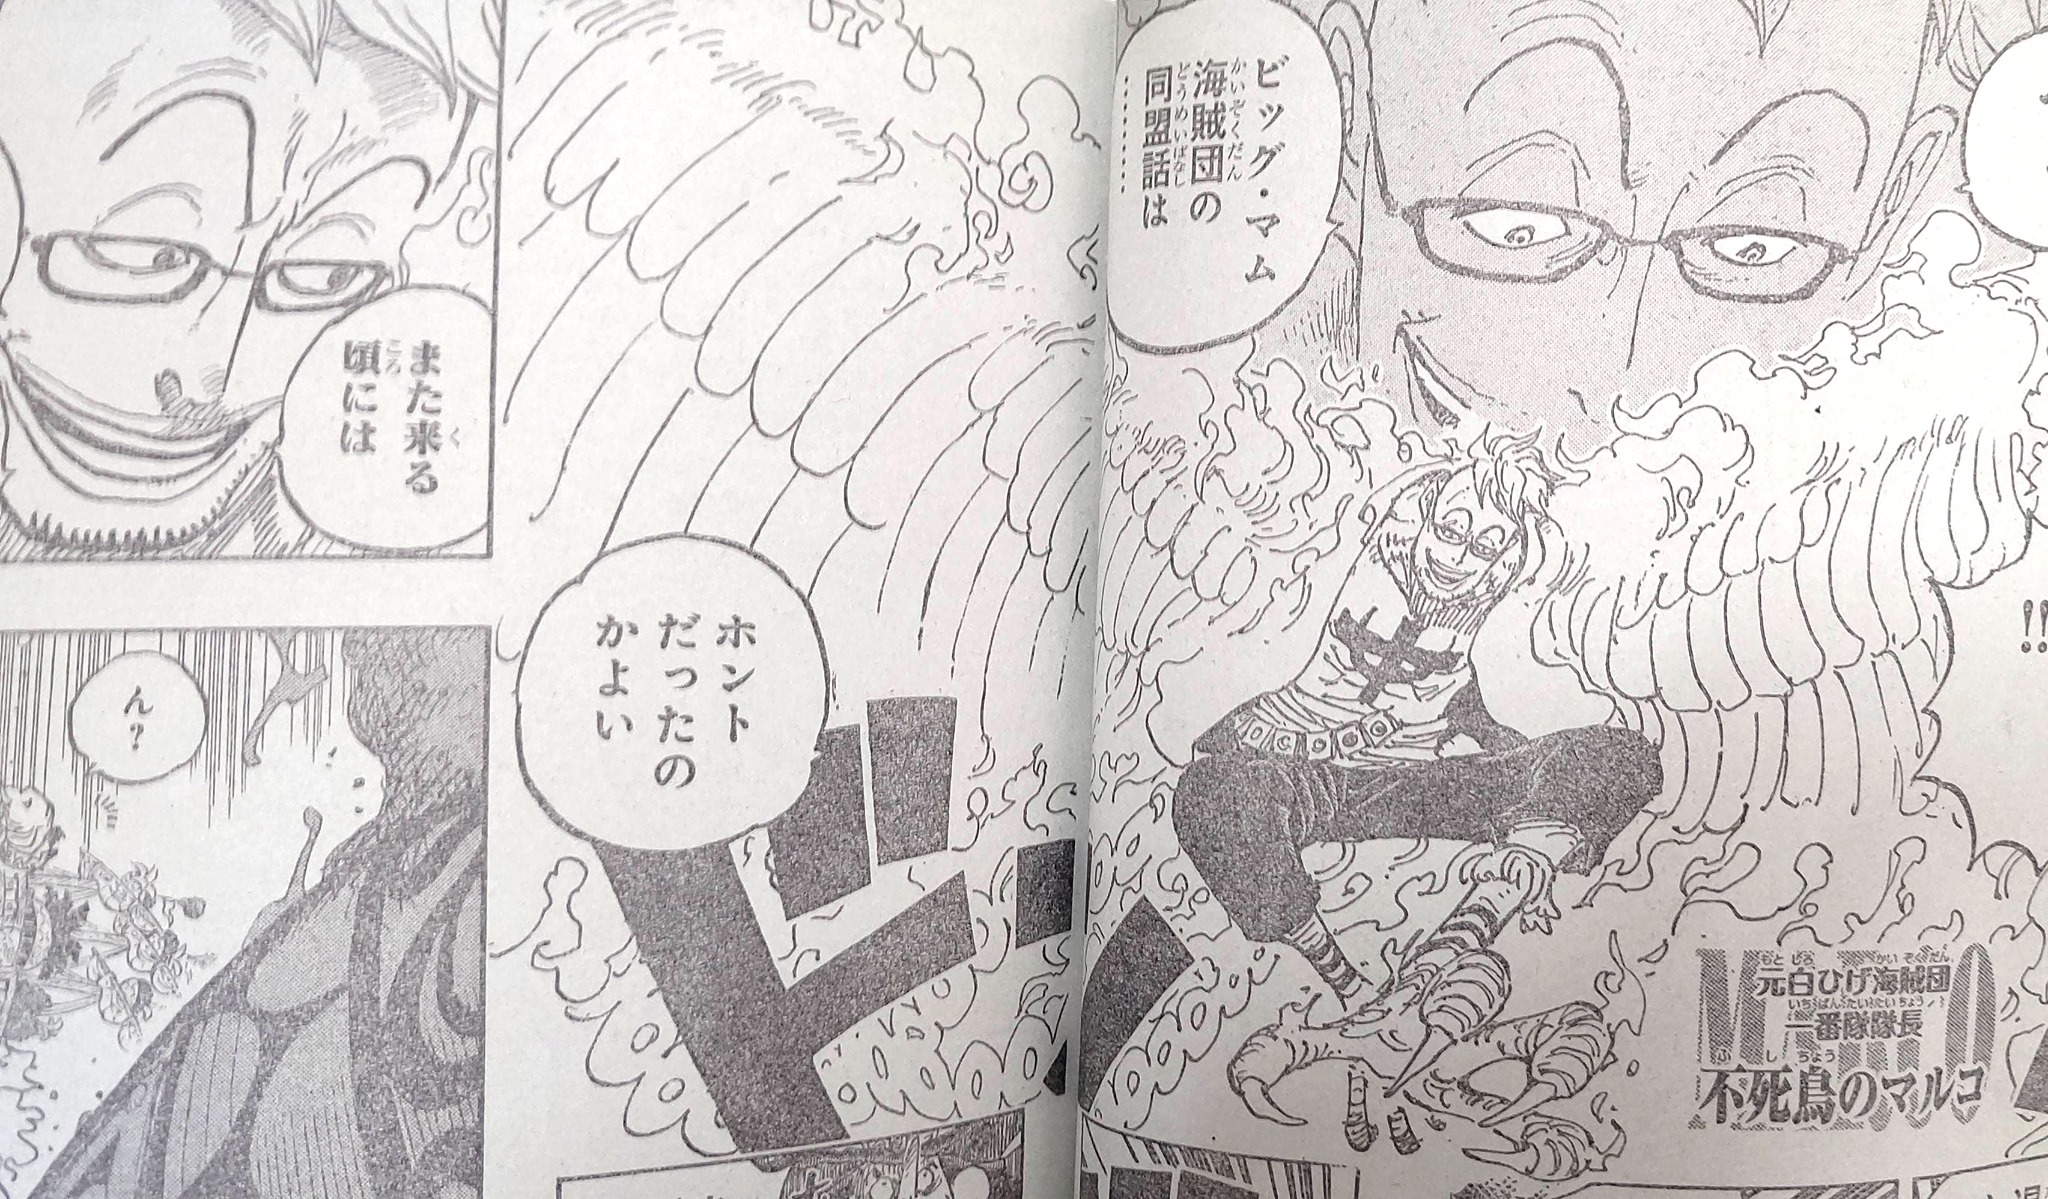 Các fan của series One Piece hả hê khi thiếu vắng Katakuri trong đội hình. Nếu bạn muốn biết được chi tiết về vấn đề này, hãy truy cập vào trang web của chúng tôi nhé!